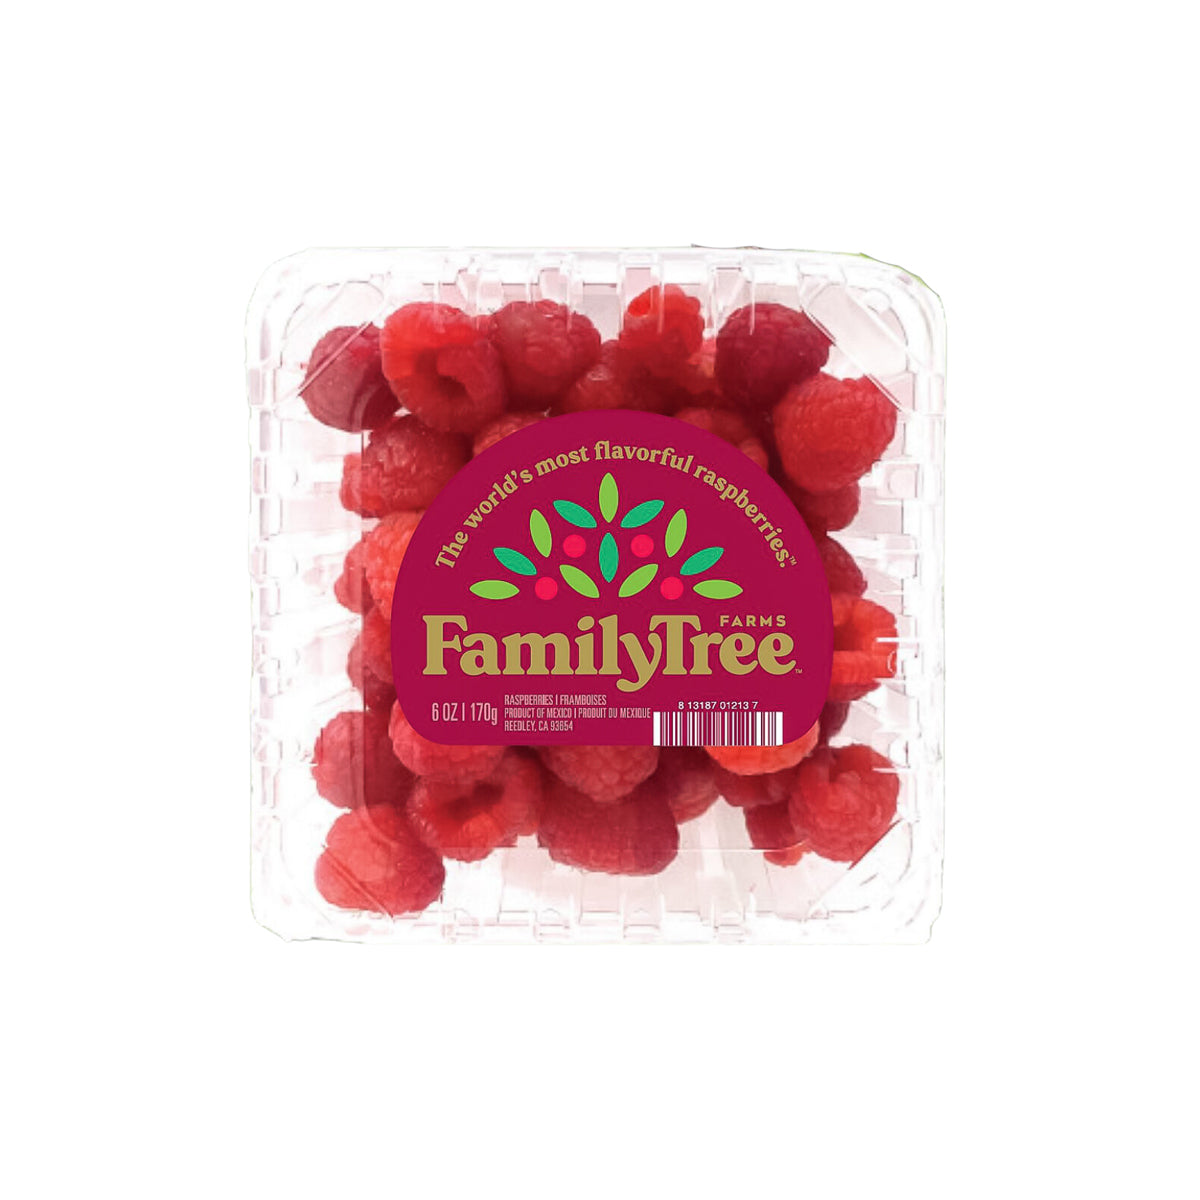 Family Tree Farms Raspberries 6 OZ